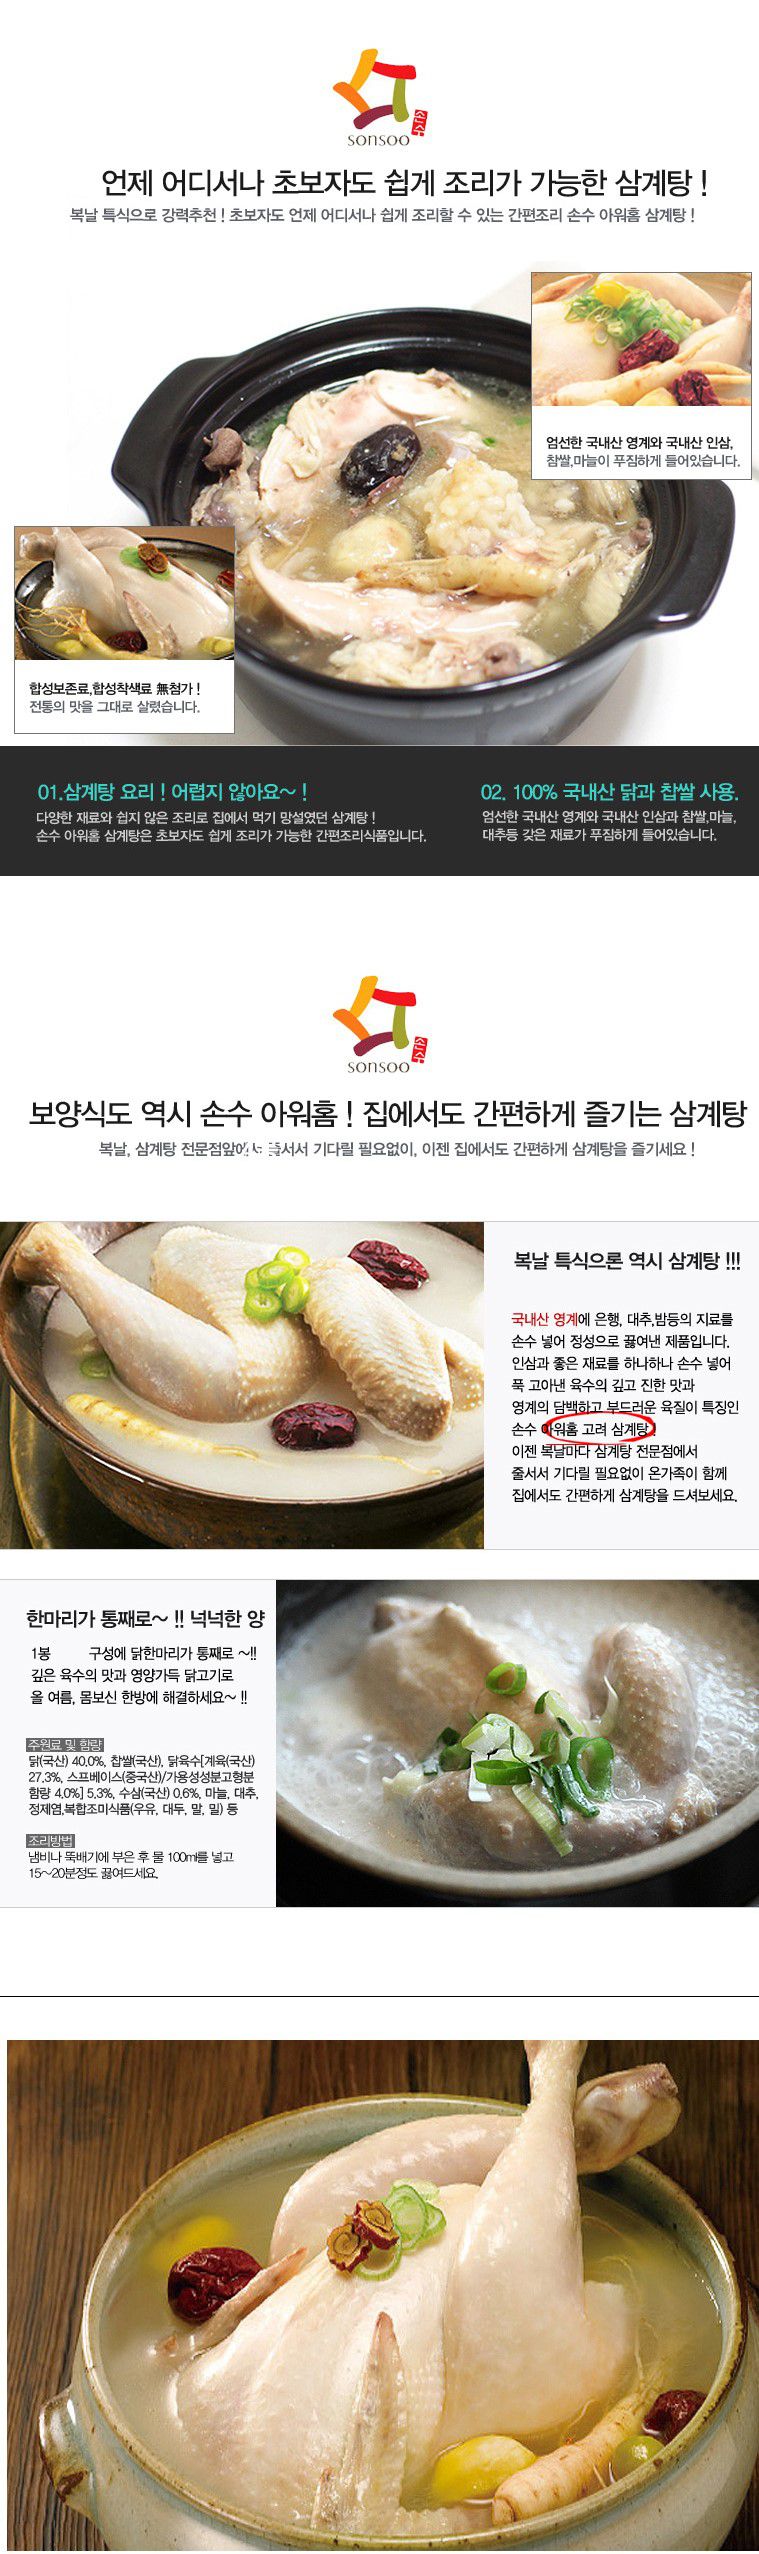 韓國食品-[아워홈] 고려삼계탕 800g